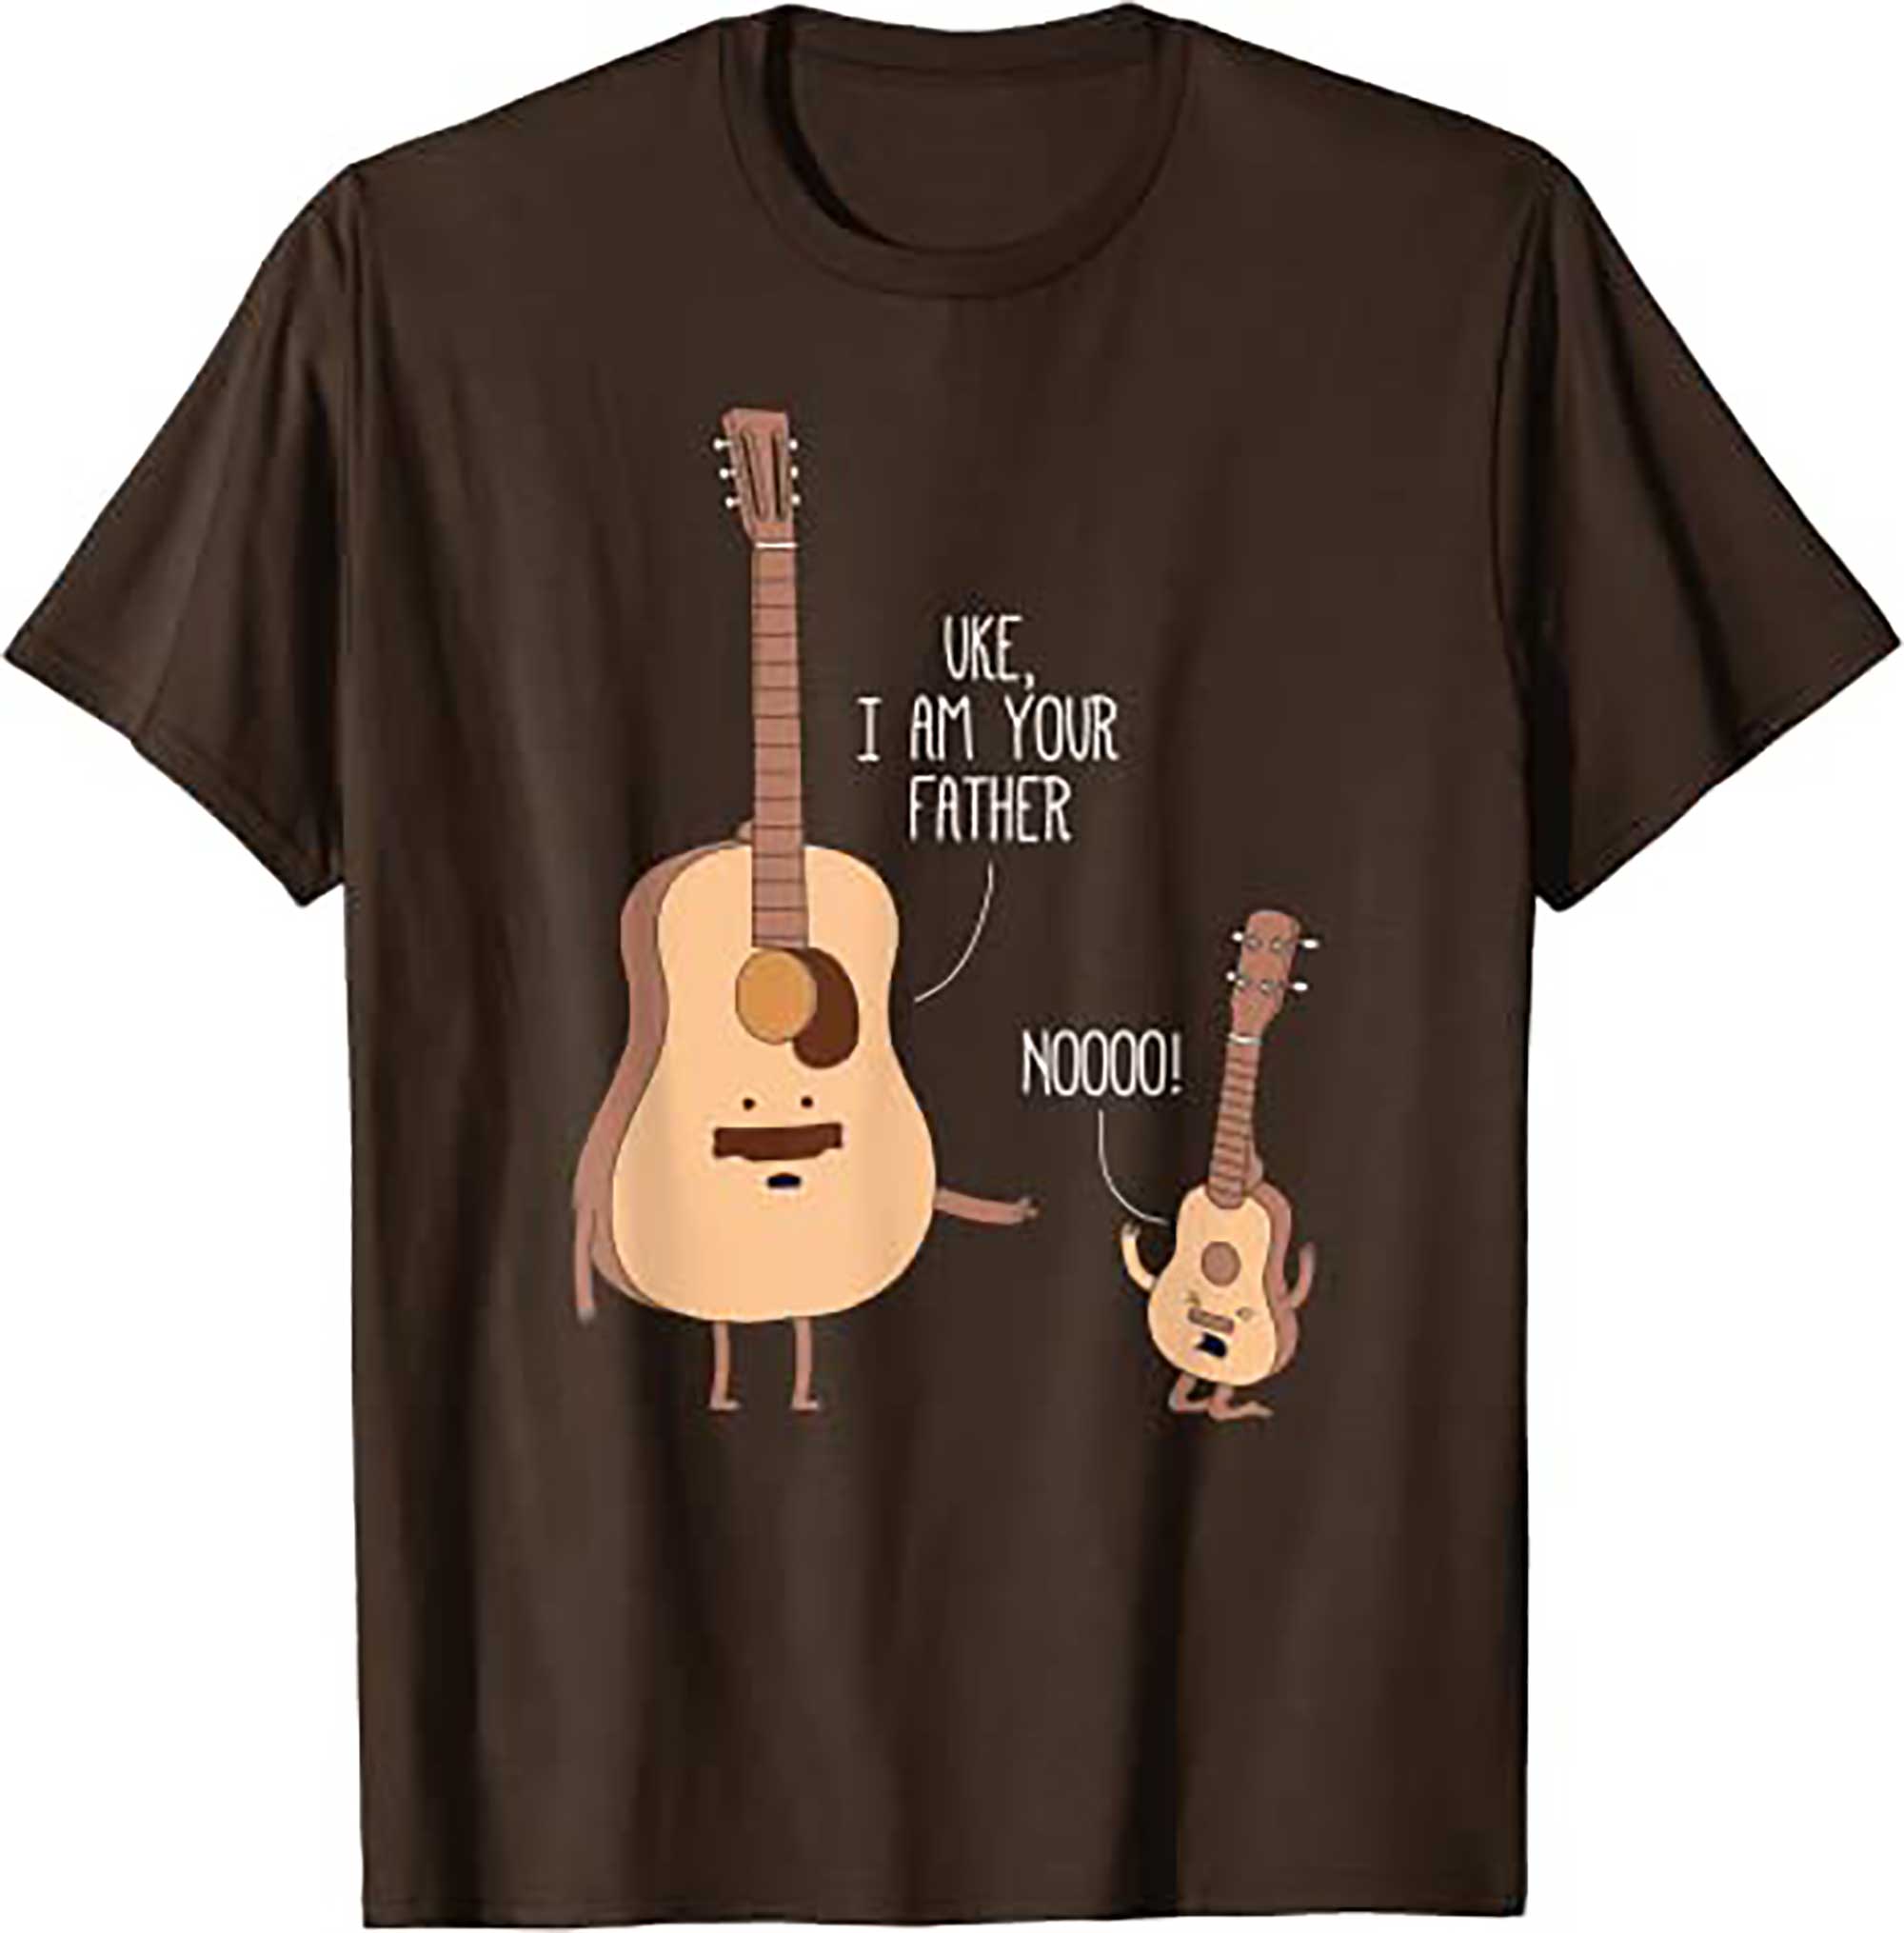 Skitongift Uke I Am Your Father T Shirt Ukulele Guitar Music